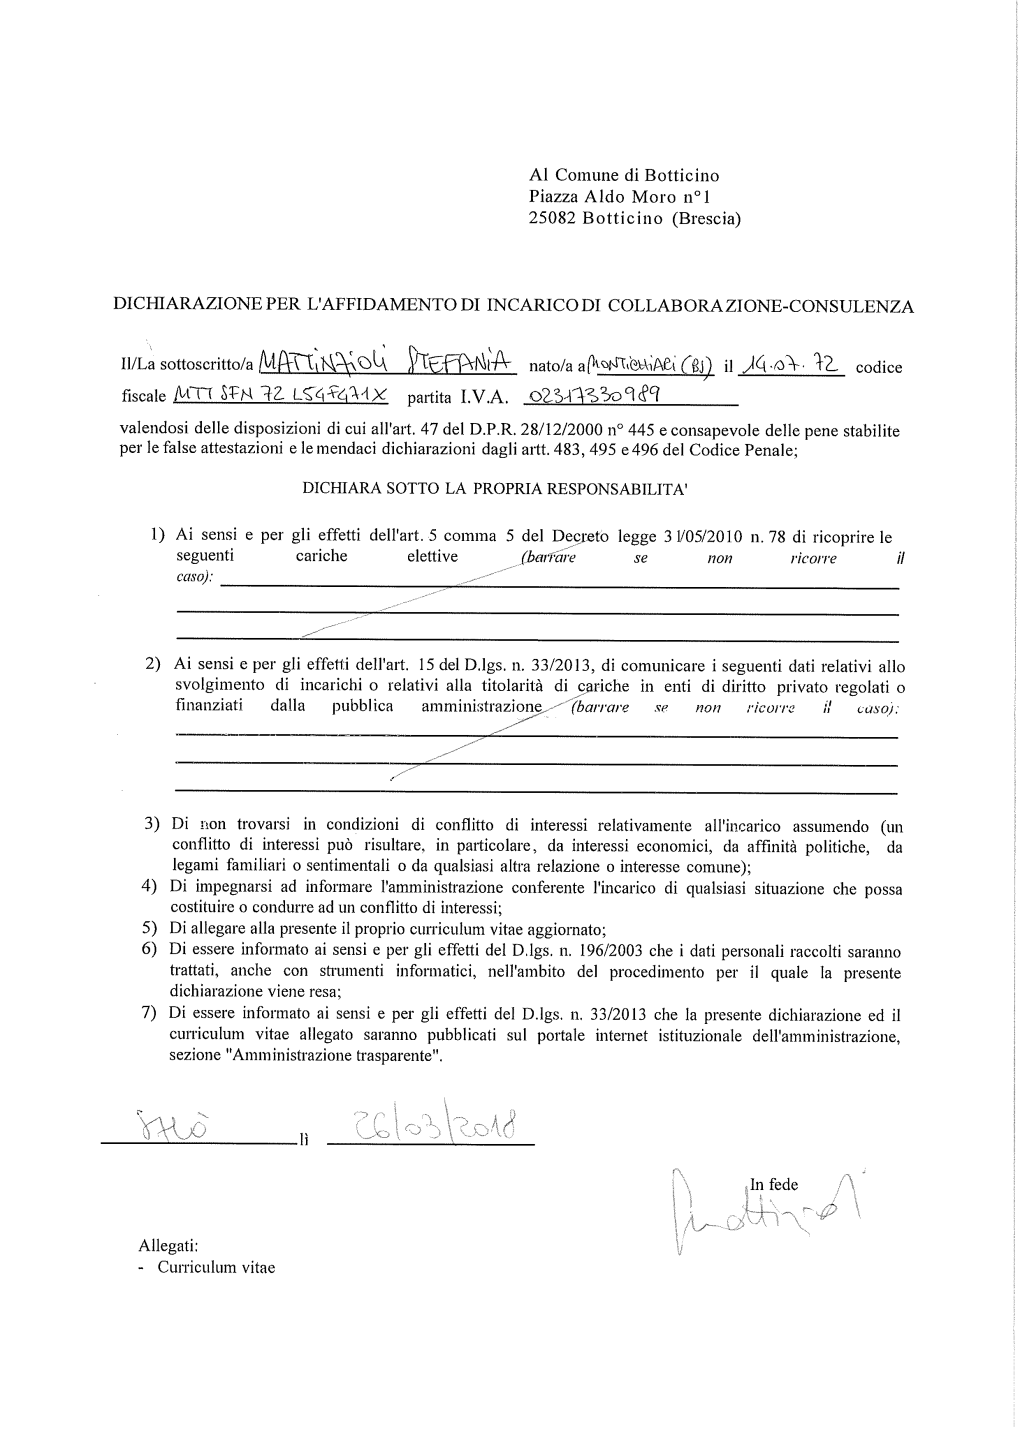 Dichiarazione Affidamento Incarichi + CV Mattinzioli.Pdf